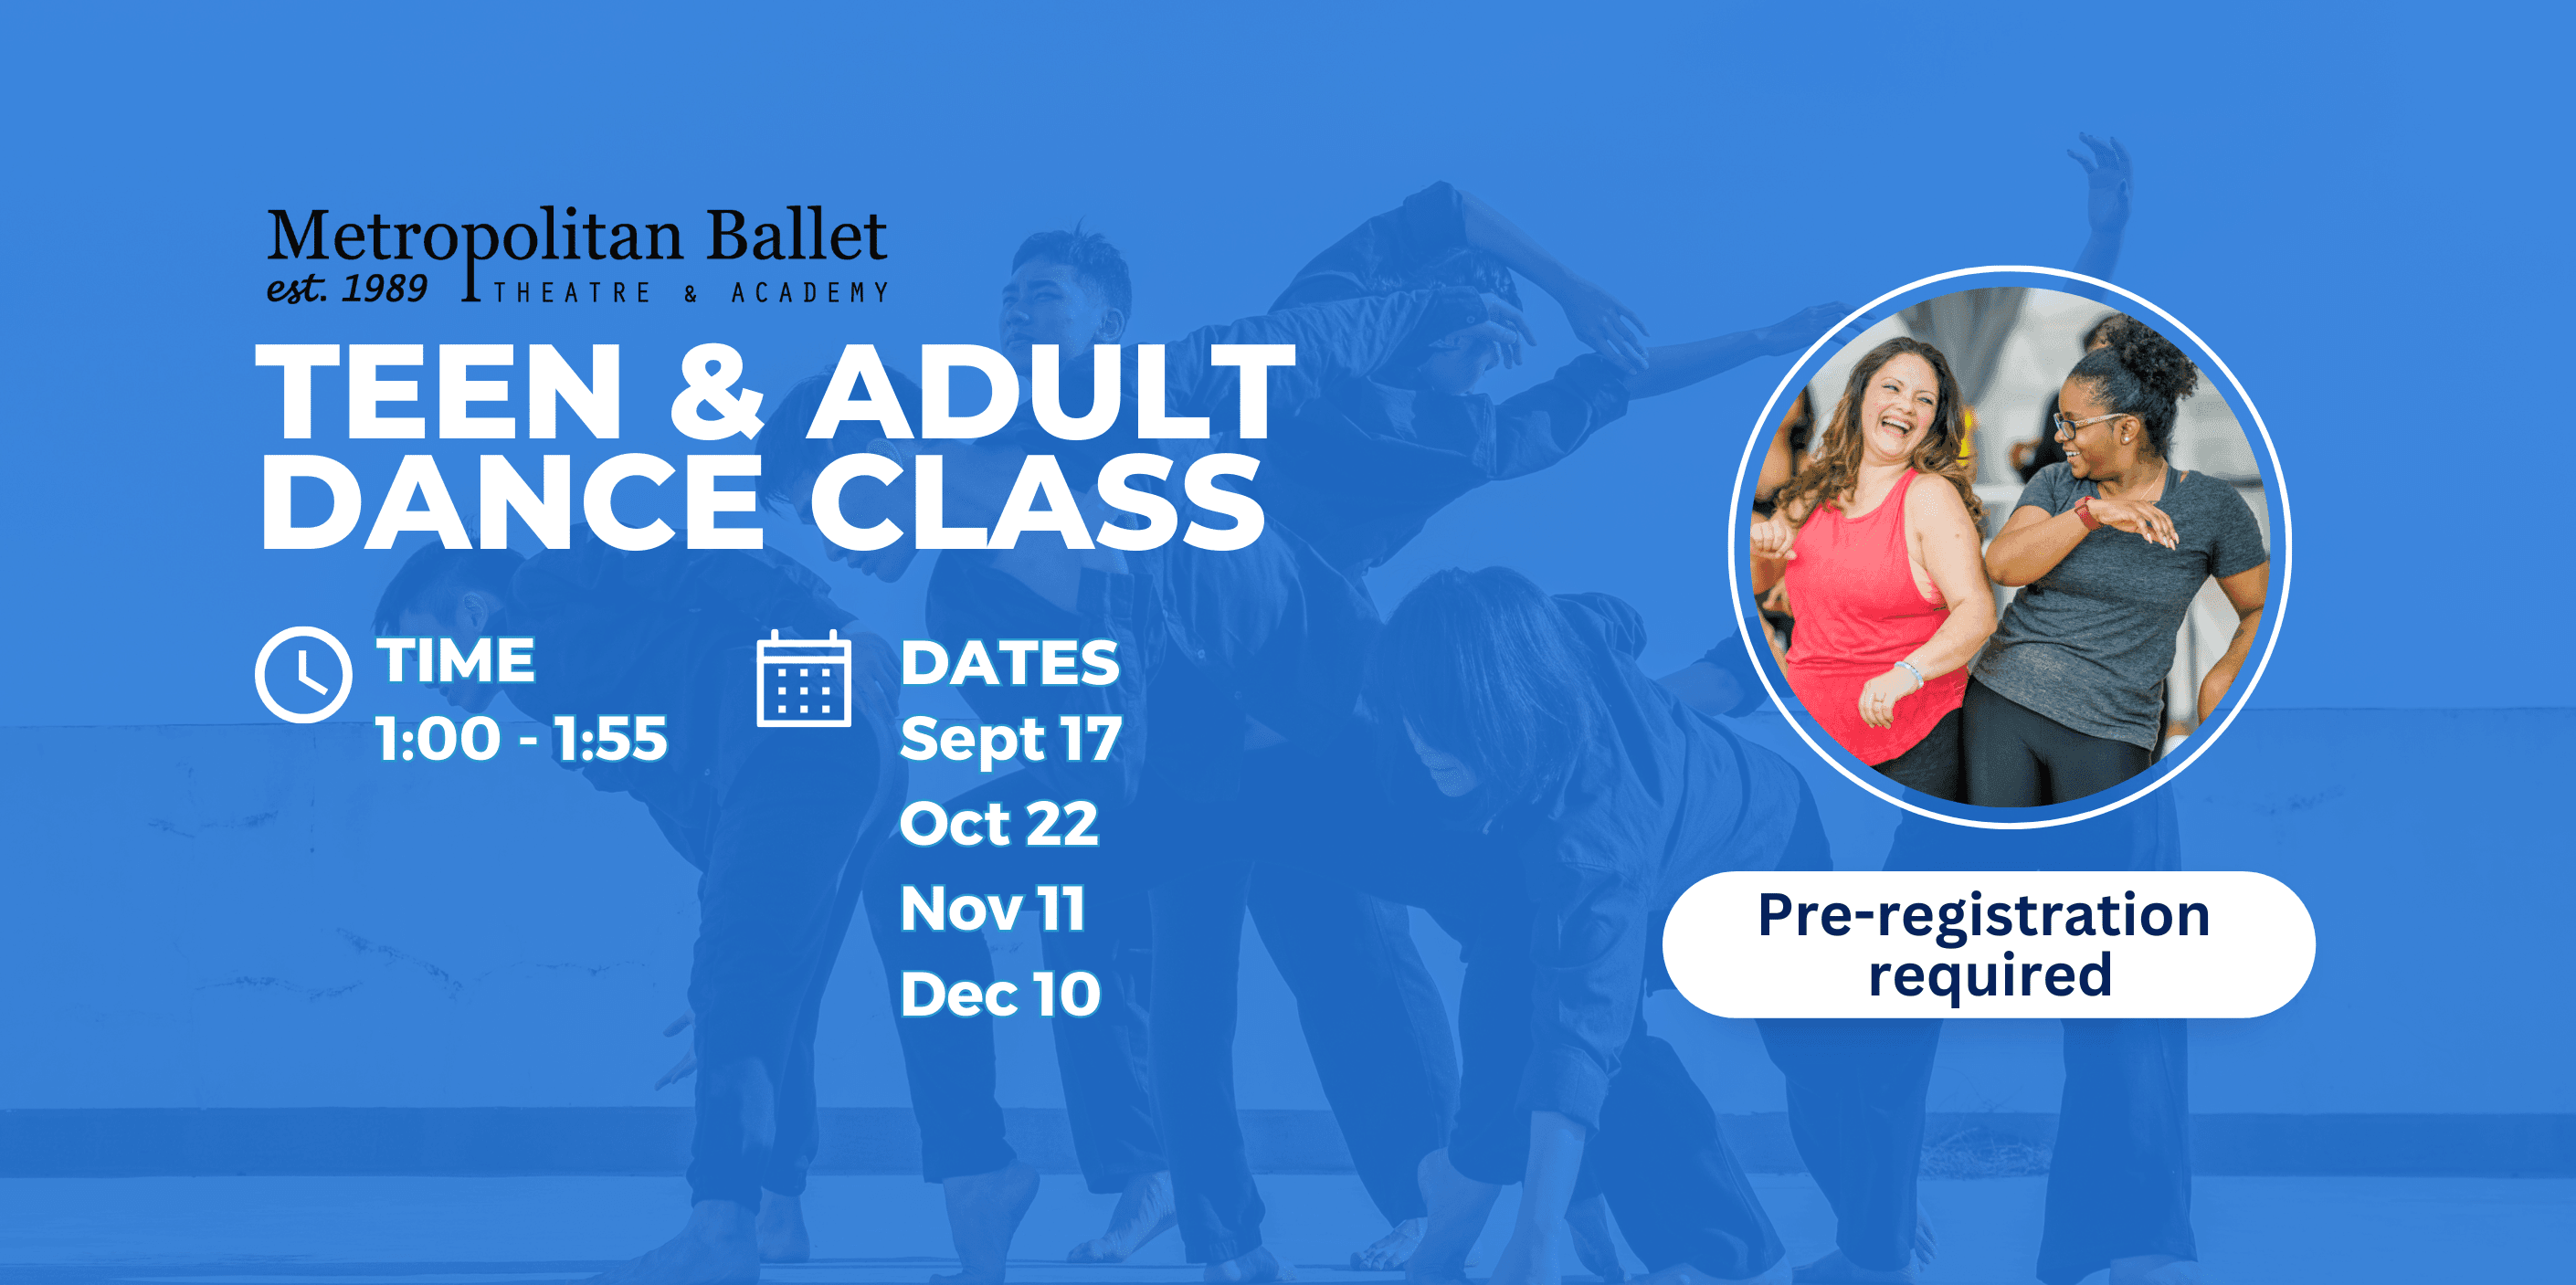 Register for upcoming dance classes!